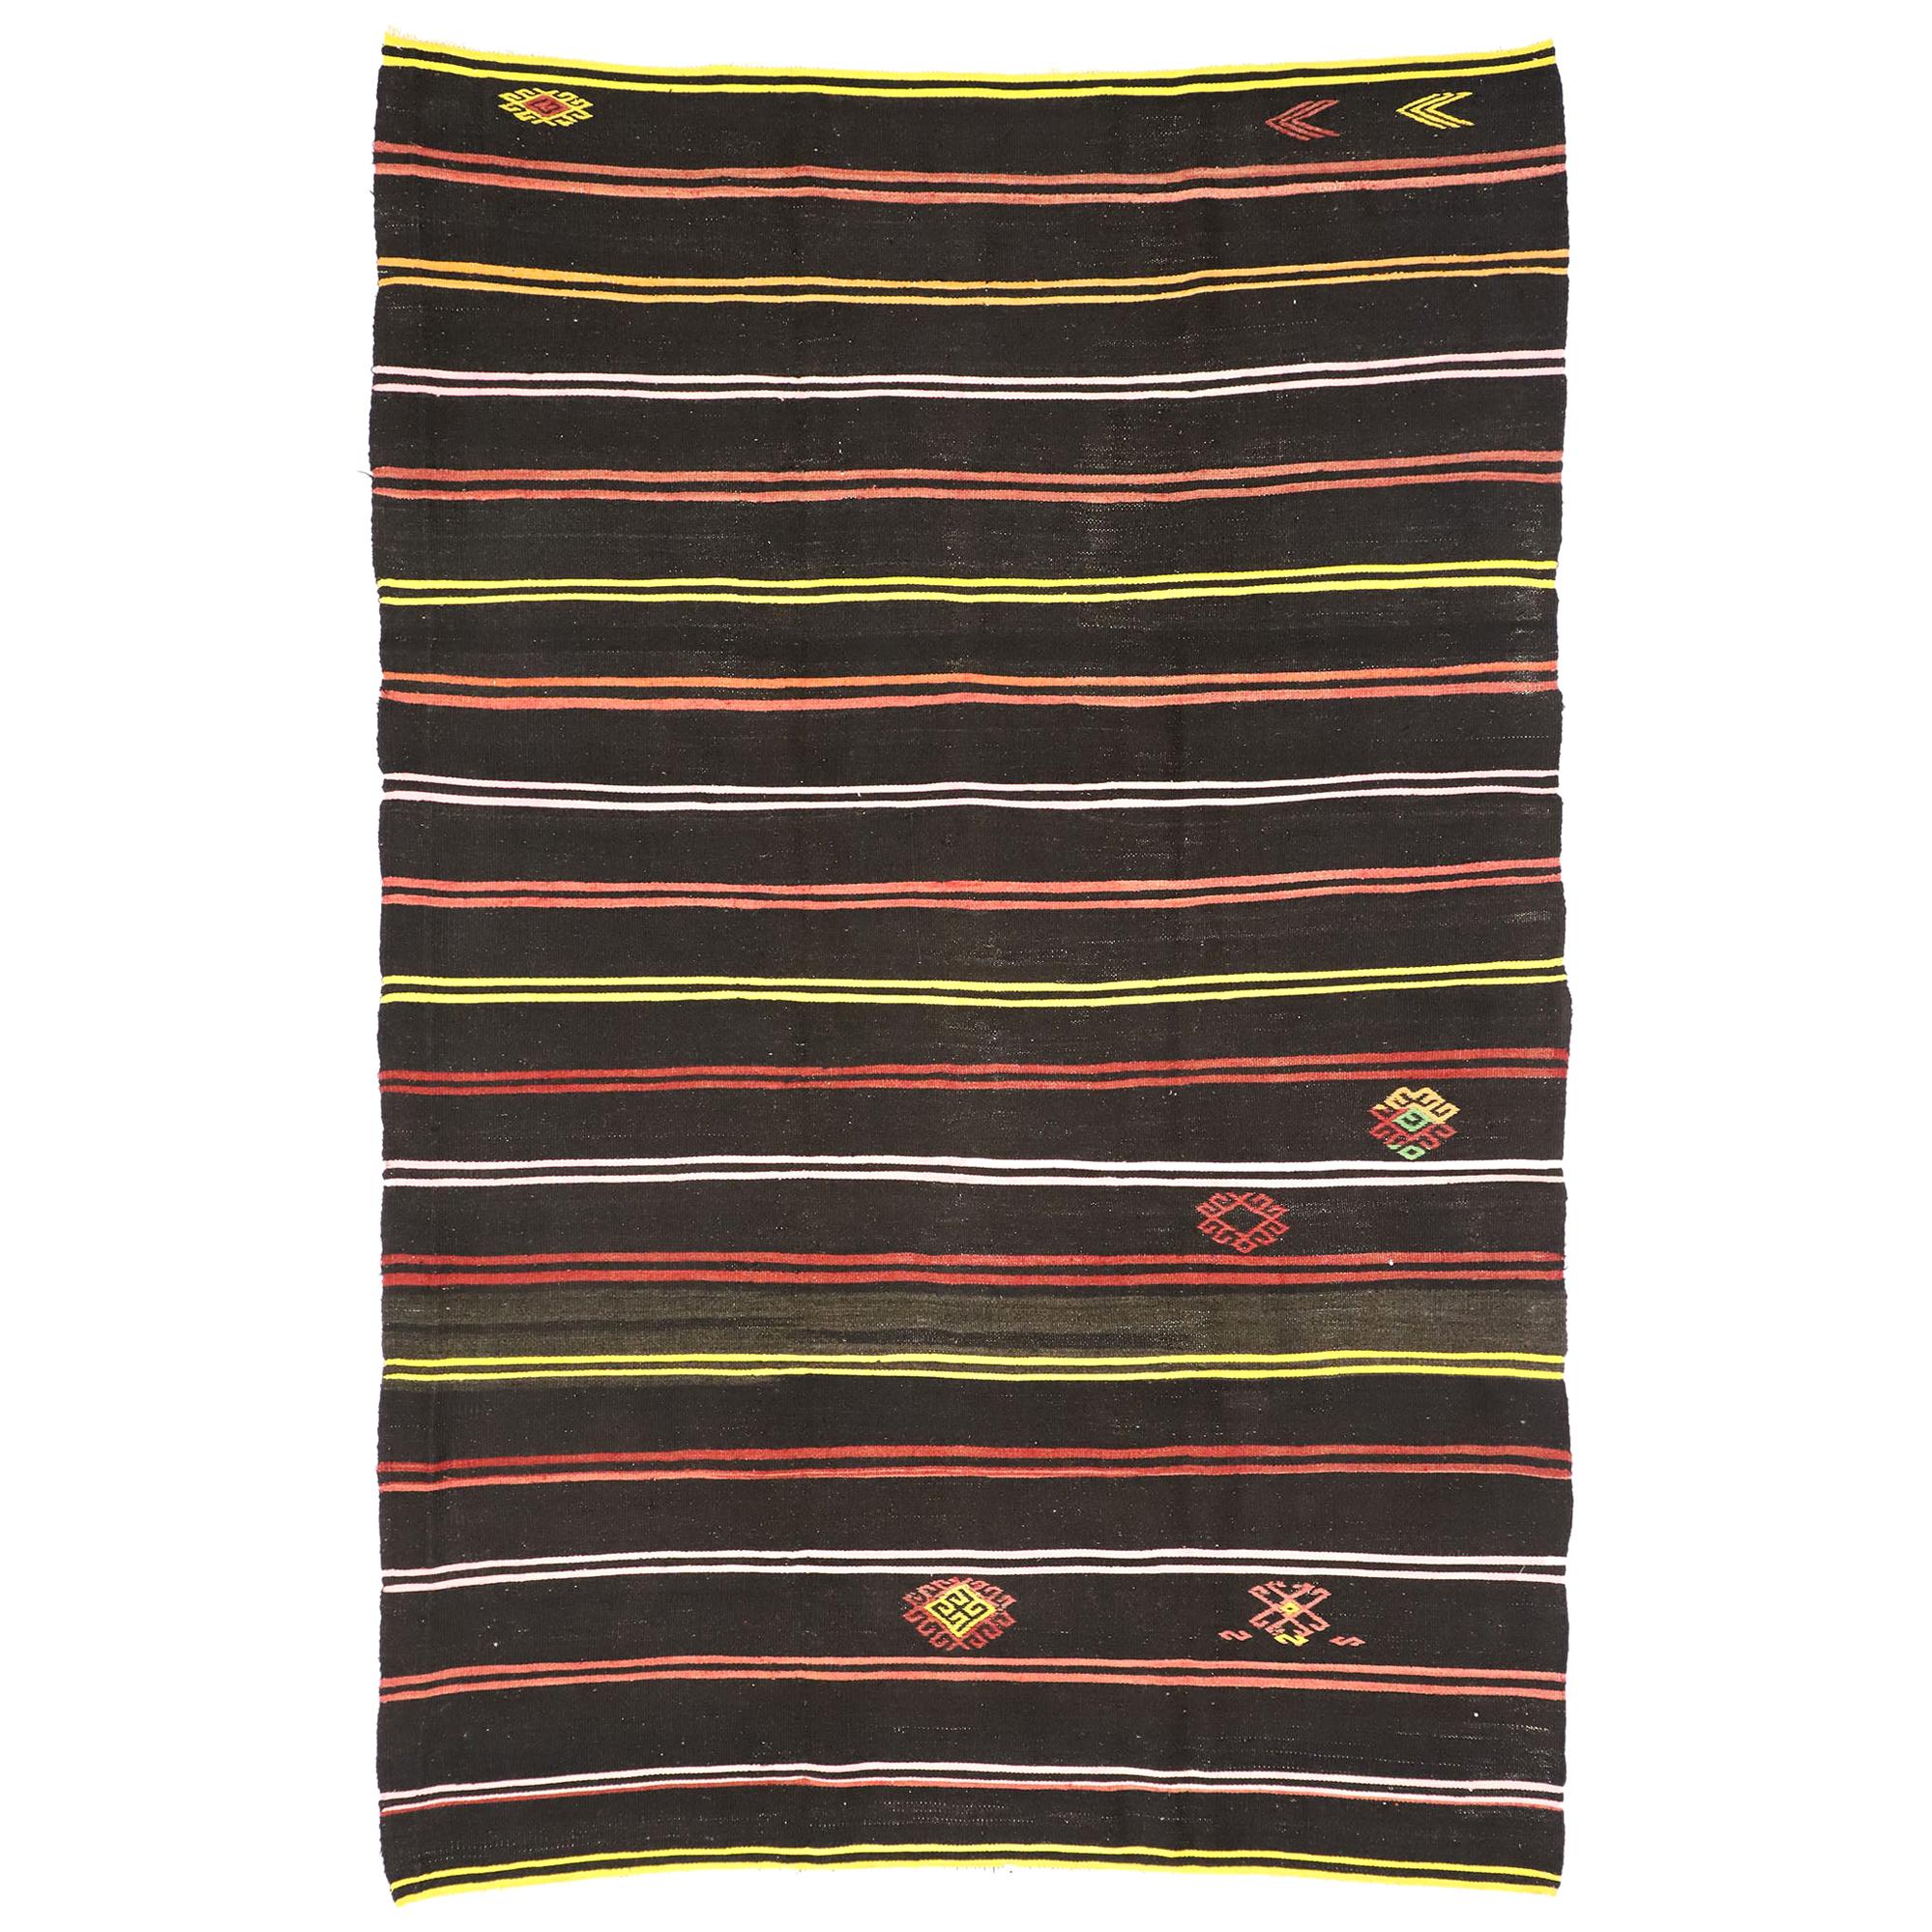 Türkischer gestreifter Kelim-Teppich mit Stammesmotiv im böhmischen Stil, flachgewebter Teppich